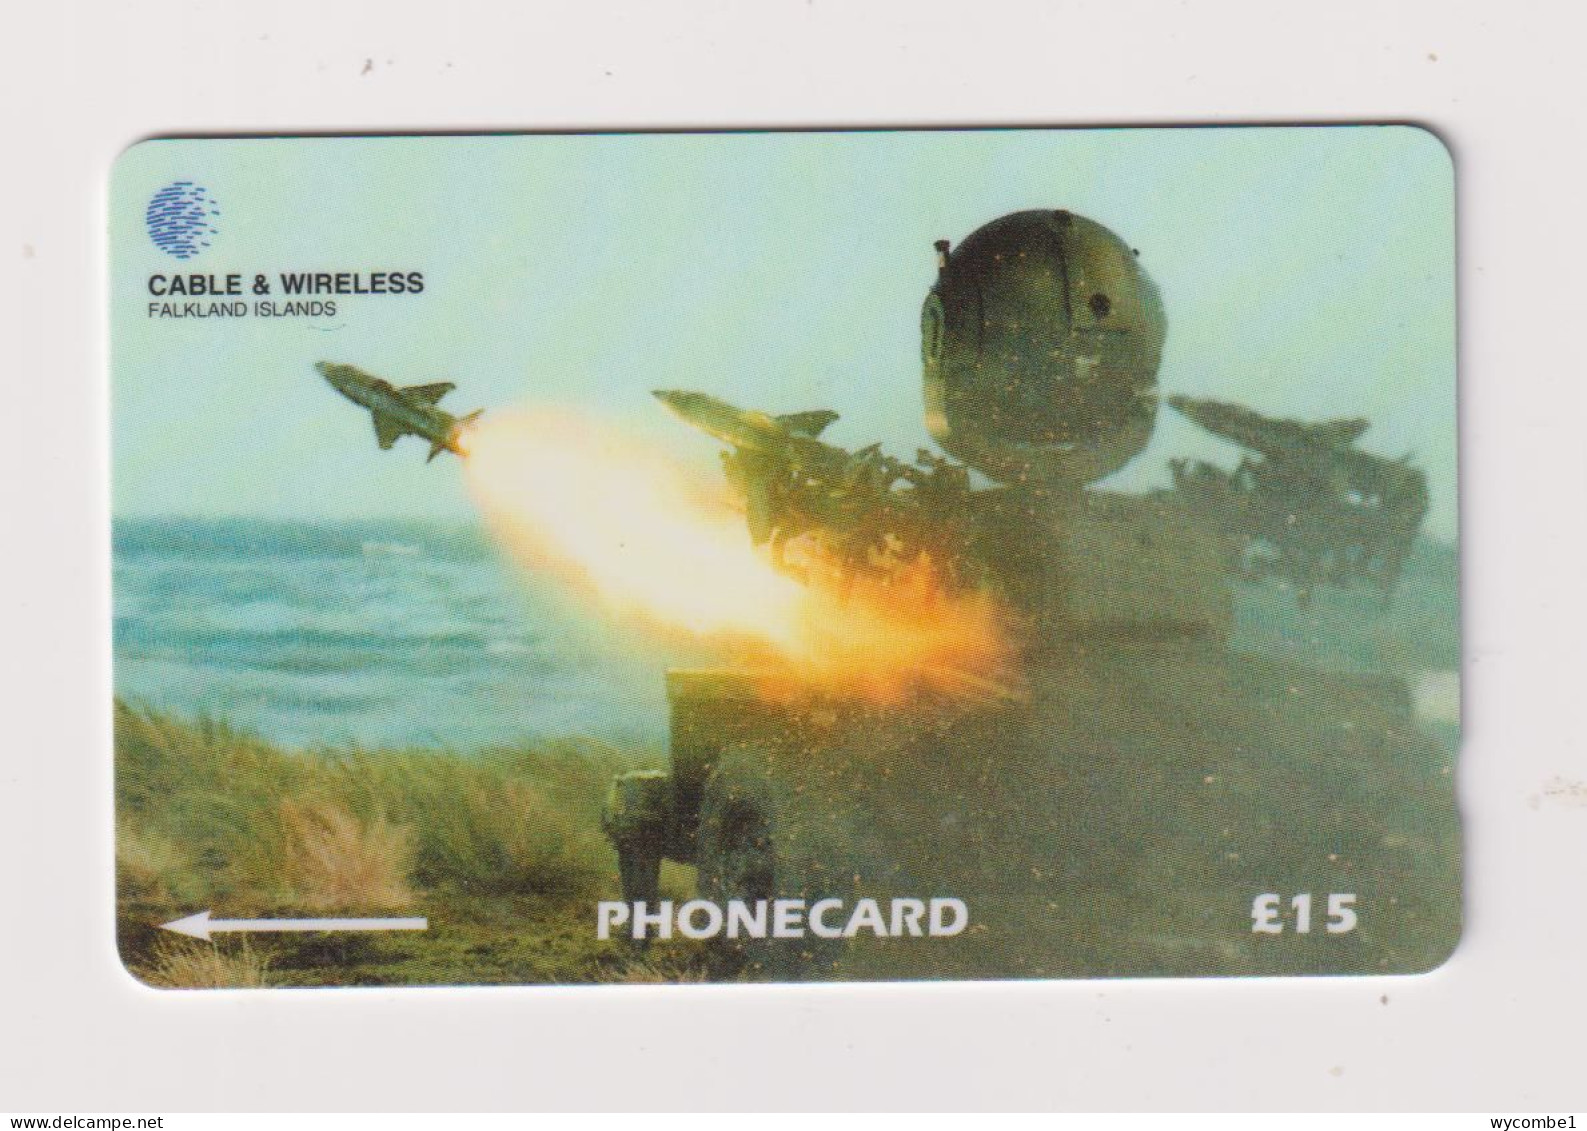 FALKLAND ISLANDS - Missile System Magnetic GPT Phonecard - Falkland Islands